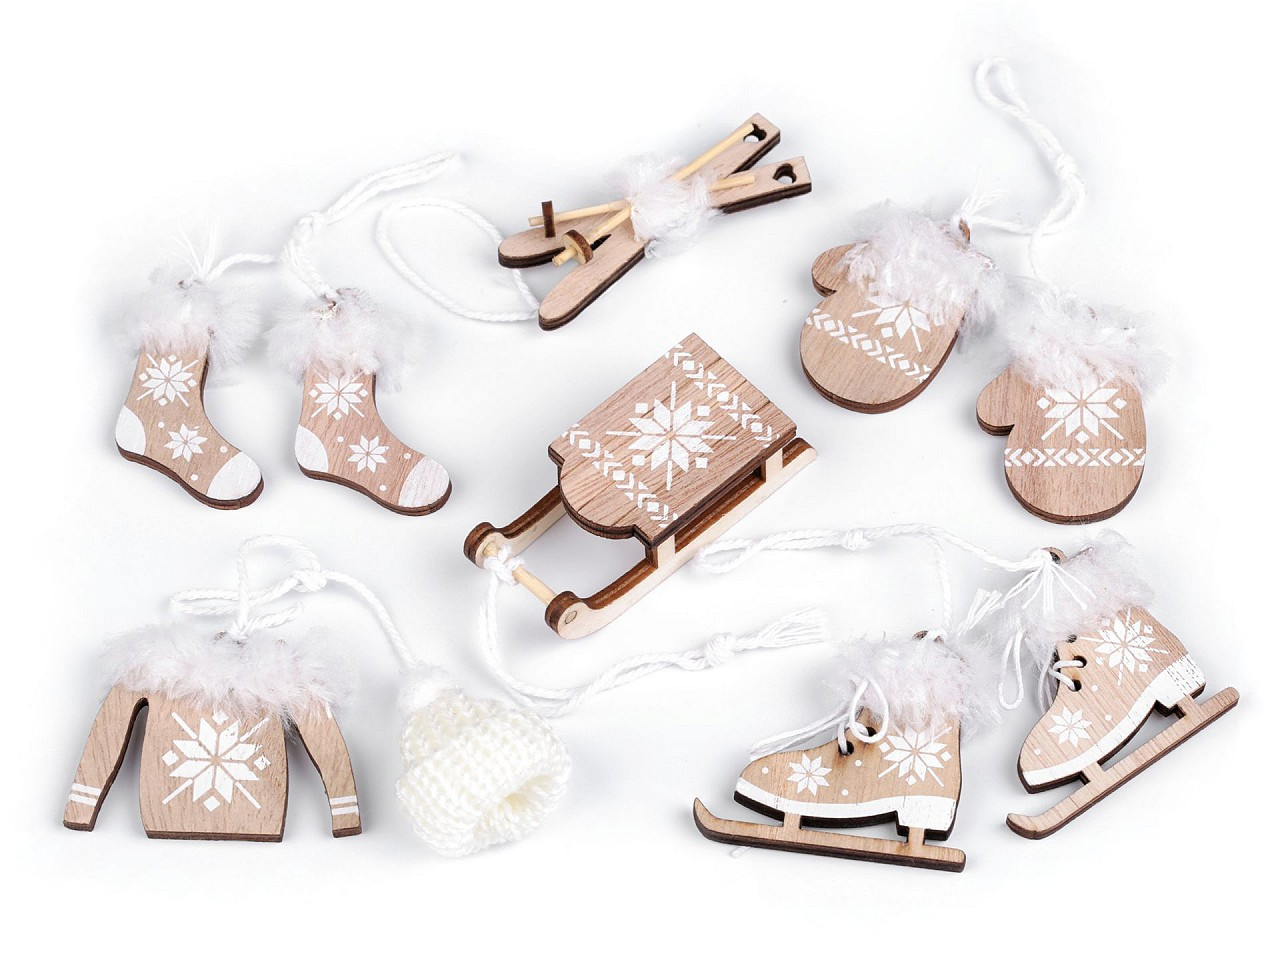 Vánoční dekorace - sáňky, lyže, brusle, čepice, bunda, rukavice, ponožky, barva 1 přírodní stř.